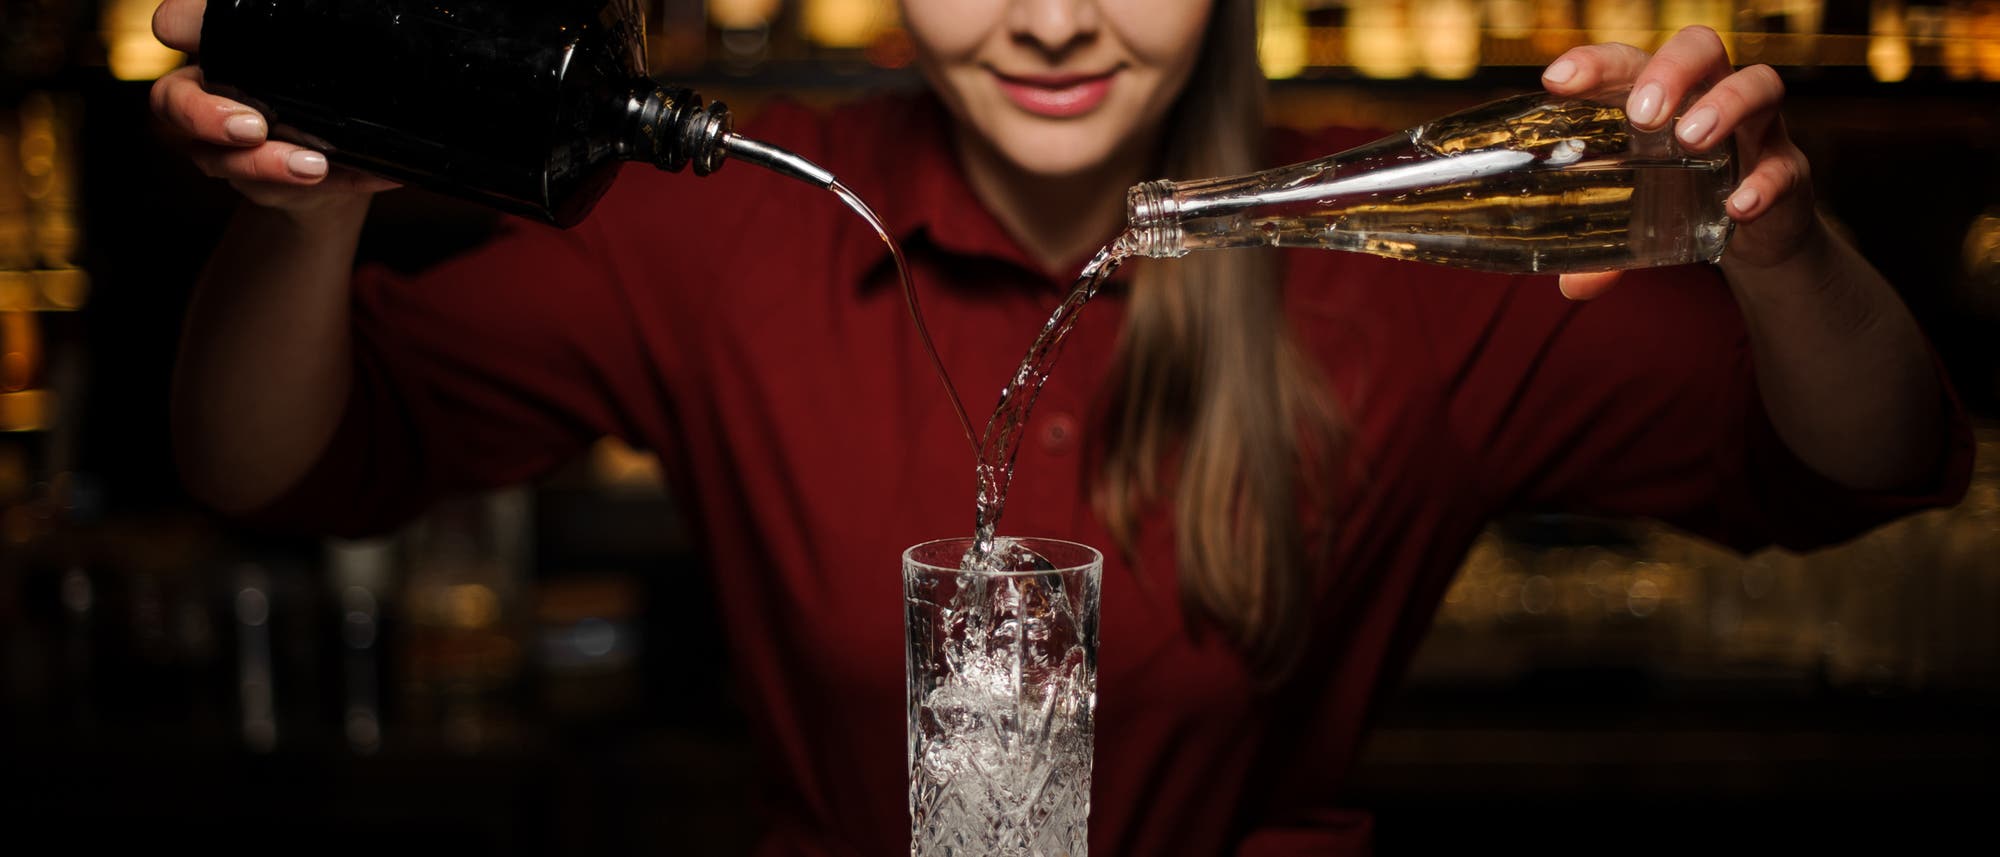 Auch Gin lässt sich passabel imitieren, besonders als Zutat für einen alkoholfreien Gin-Cocktail.